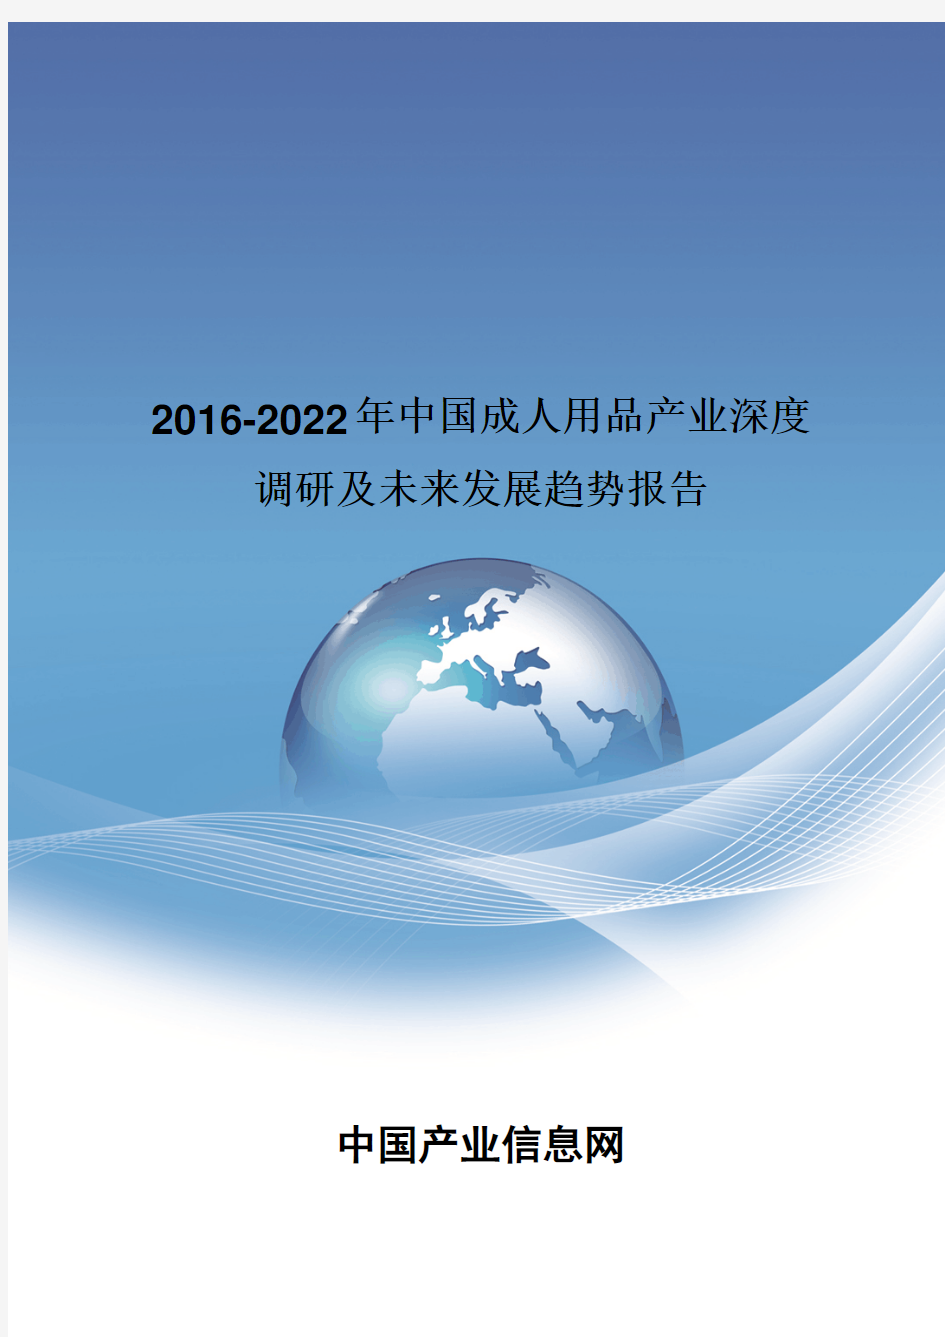 2016-2022年中国成人用品产业深度调研报告